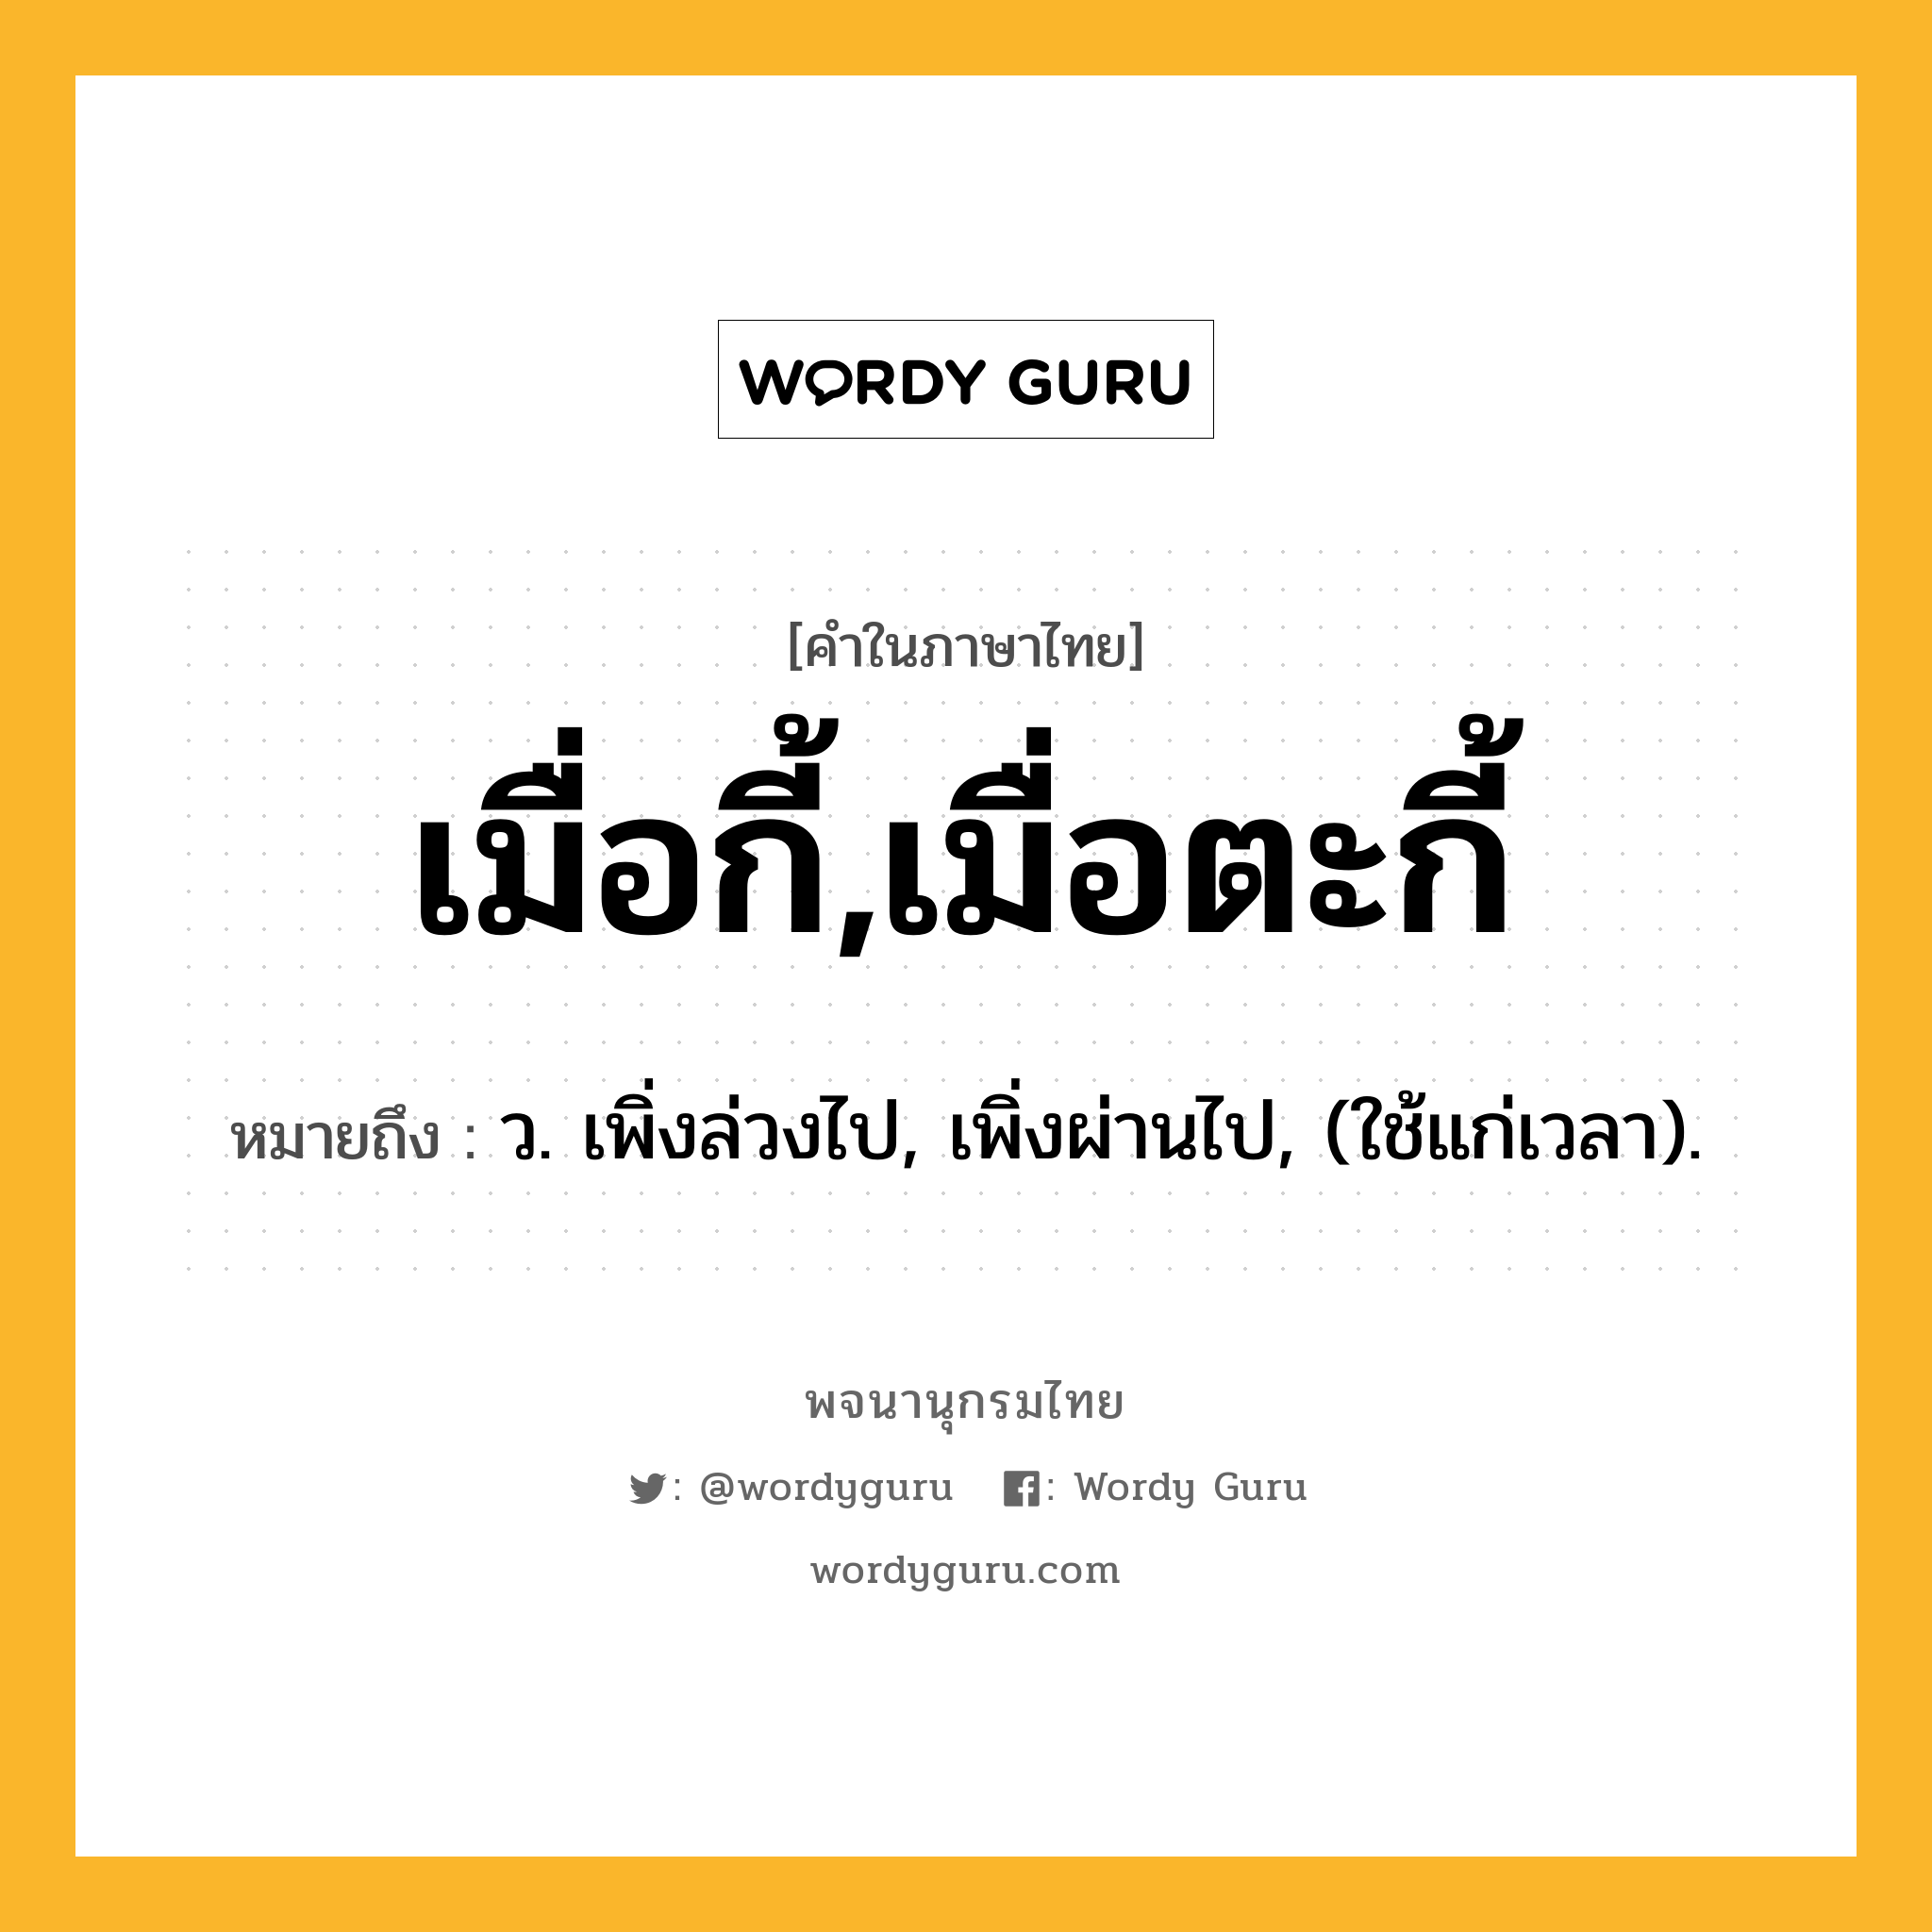 เมื่อกี้,เมื่อตะกี้ ความหมาย หมายถึงอะไร?, คำในภาษาไทย เมื่อกี้,เมื่อตะกี้ หมายถึง ว. เพิ่งล่วงไป, เพิ่งผ่านไป, (ใช้แก่เวลา).